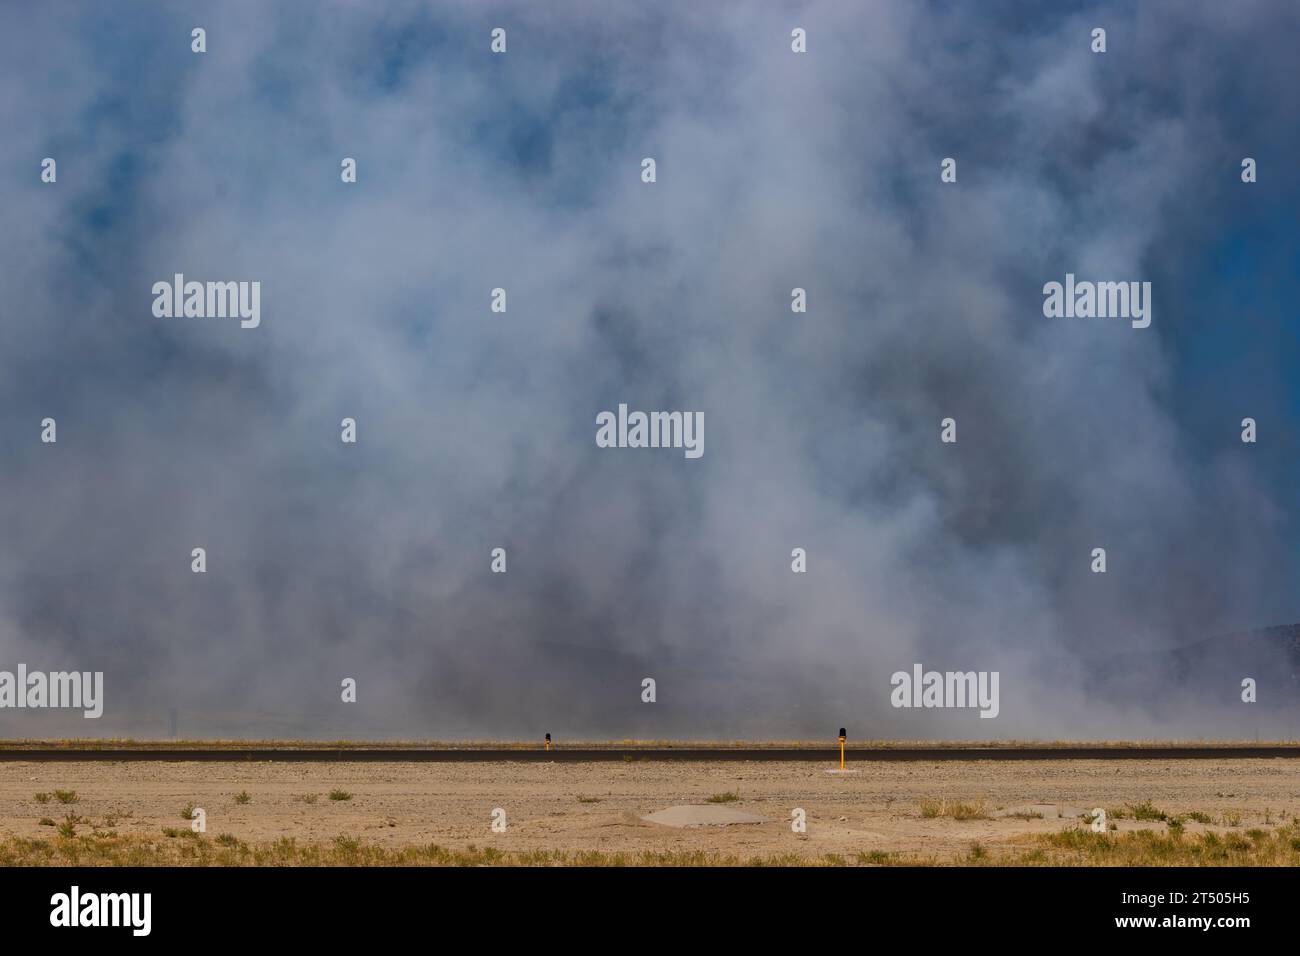 El humo de un posquemador de chorro cuelga sobre la pista en el aeropuerto Stead en Neveda. Foto de stock